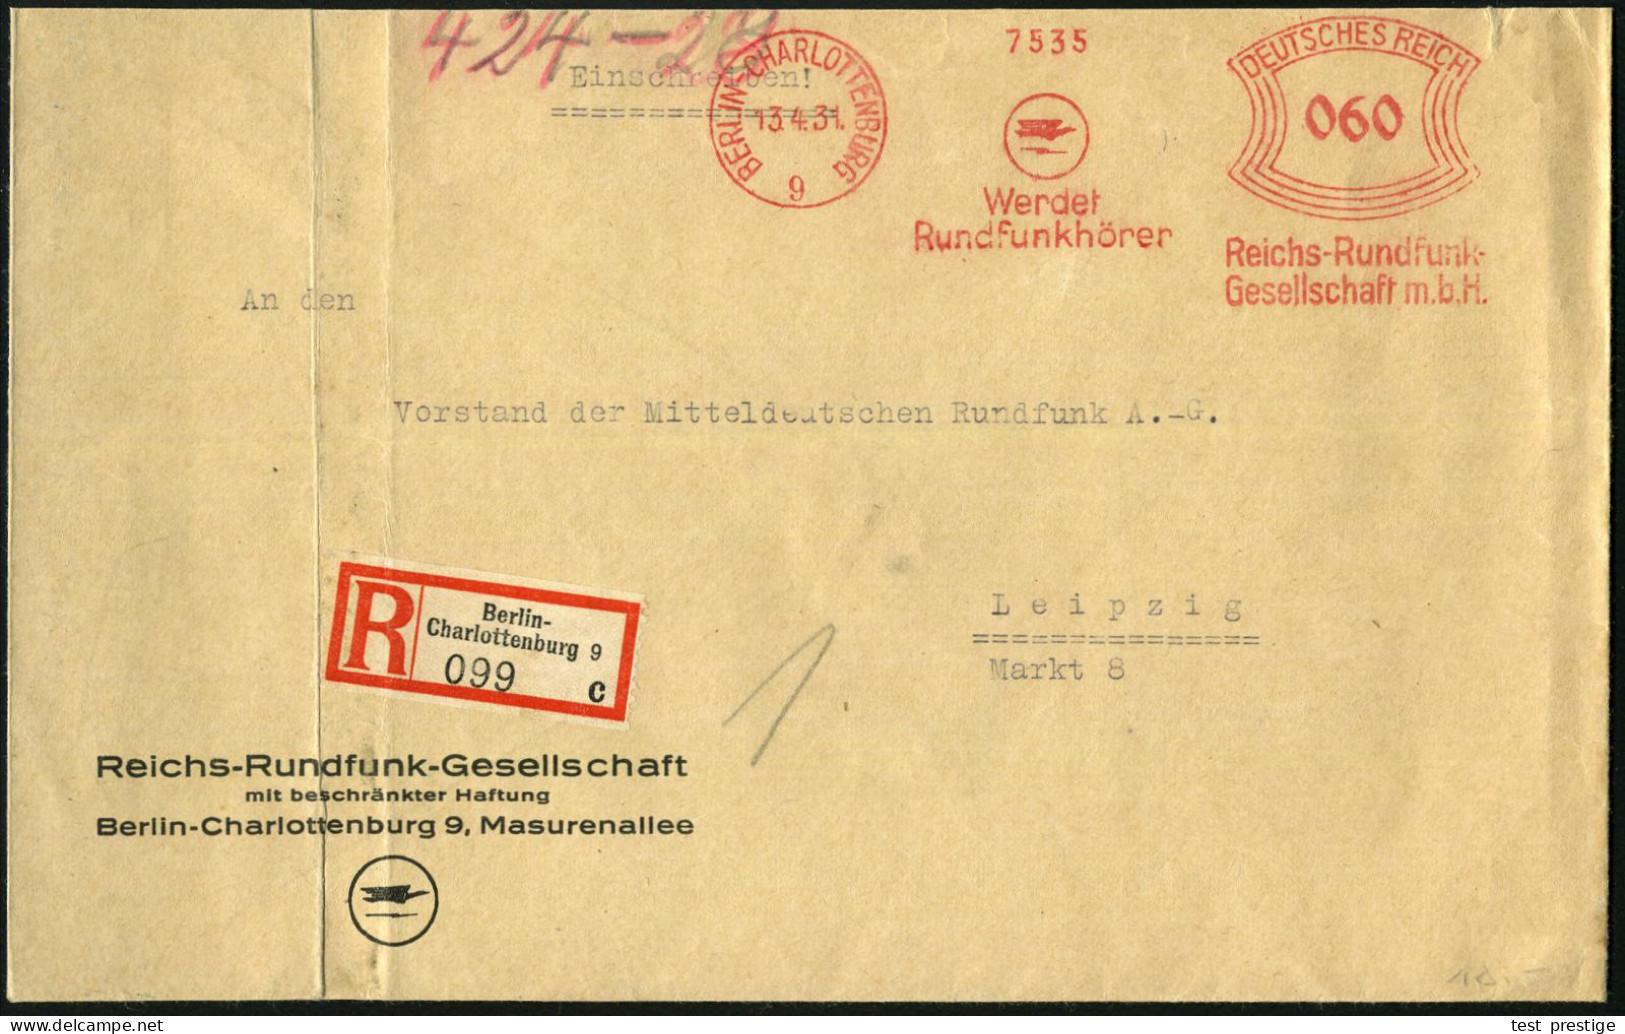 BERLIN-CHARLOTTENBURG/ 9/ Werdet/ Rundfunkhörer/ Reichs-Rundfunk-/ GmbH 1931 (13.4.) AFS Francotyp 060 Pf. (Logo) Auf Mo - Autres